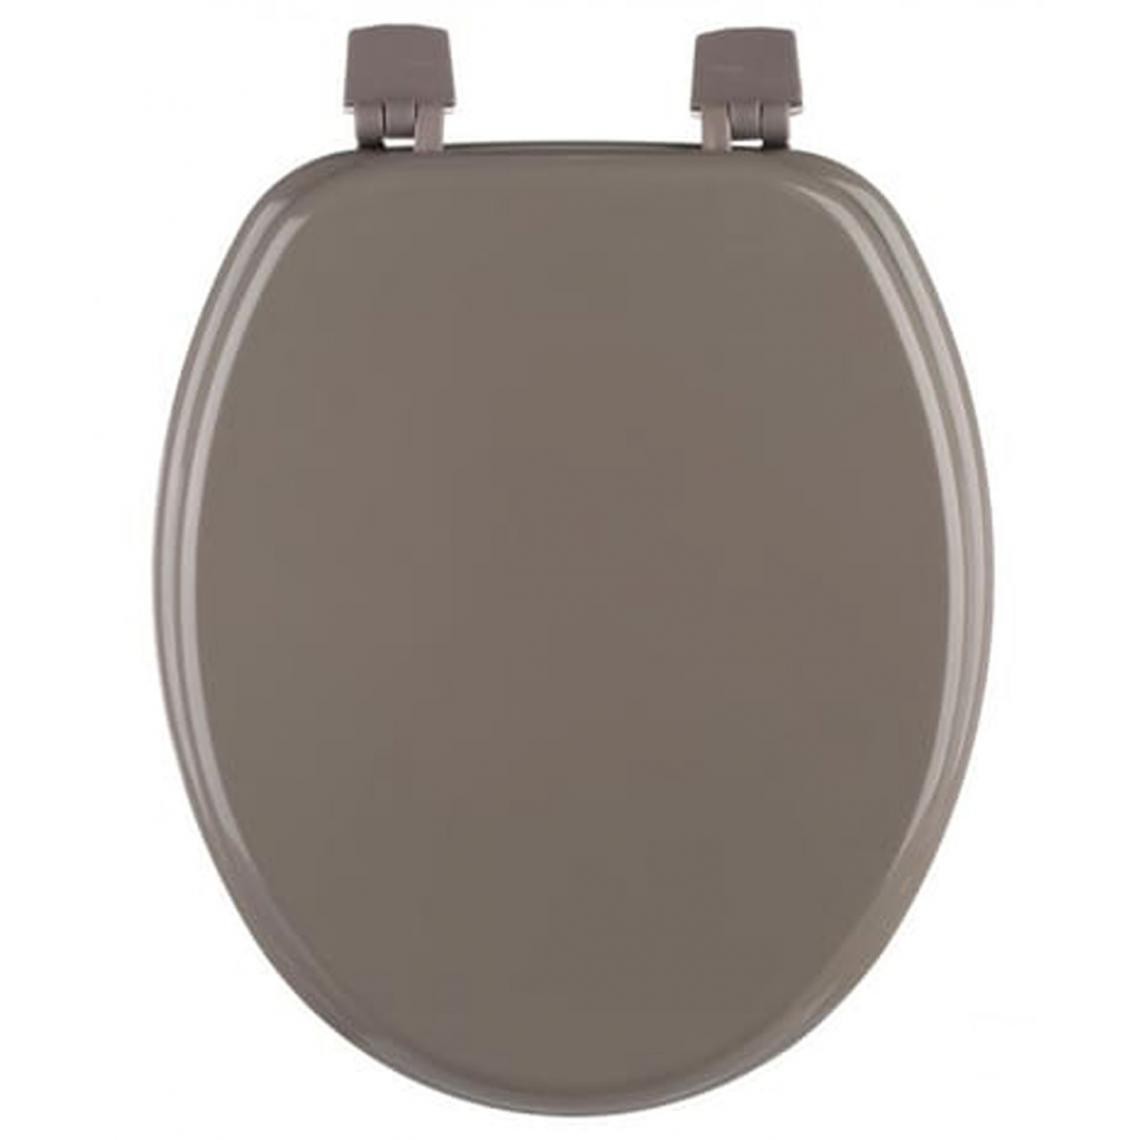 Pegane - Abattant WC coloris taupe en Bois MDF -Dimensions : 43 x 37 x 3.5 cm - Abattant WC